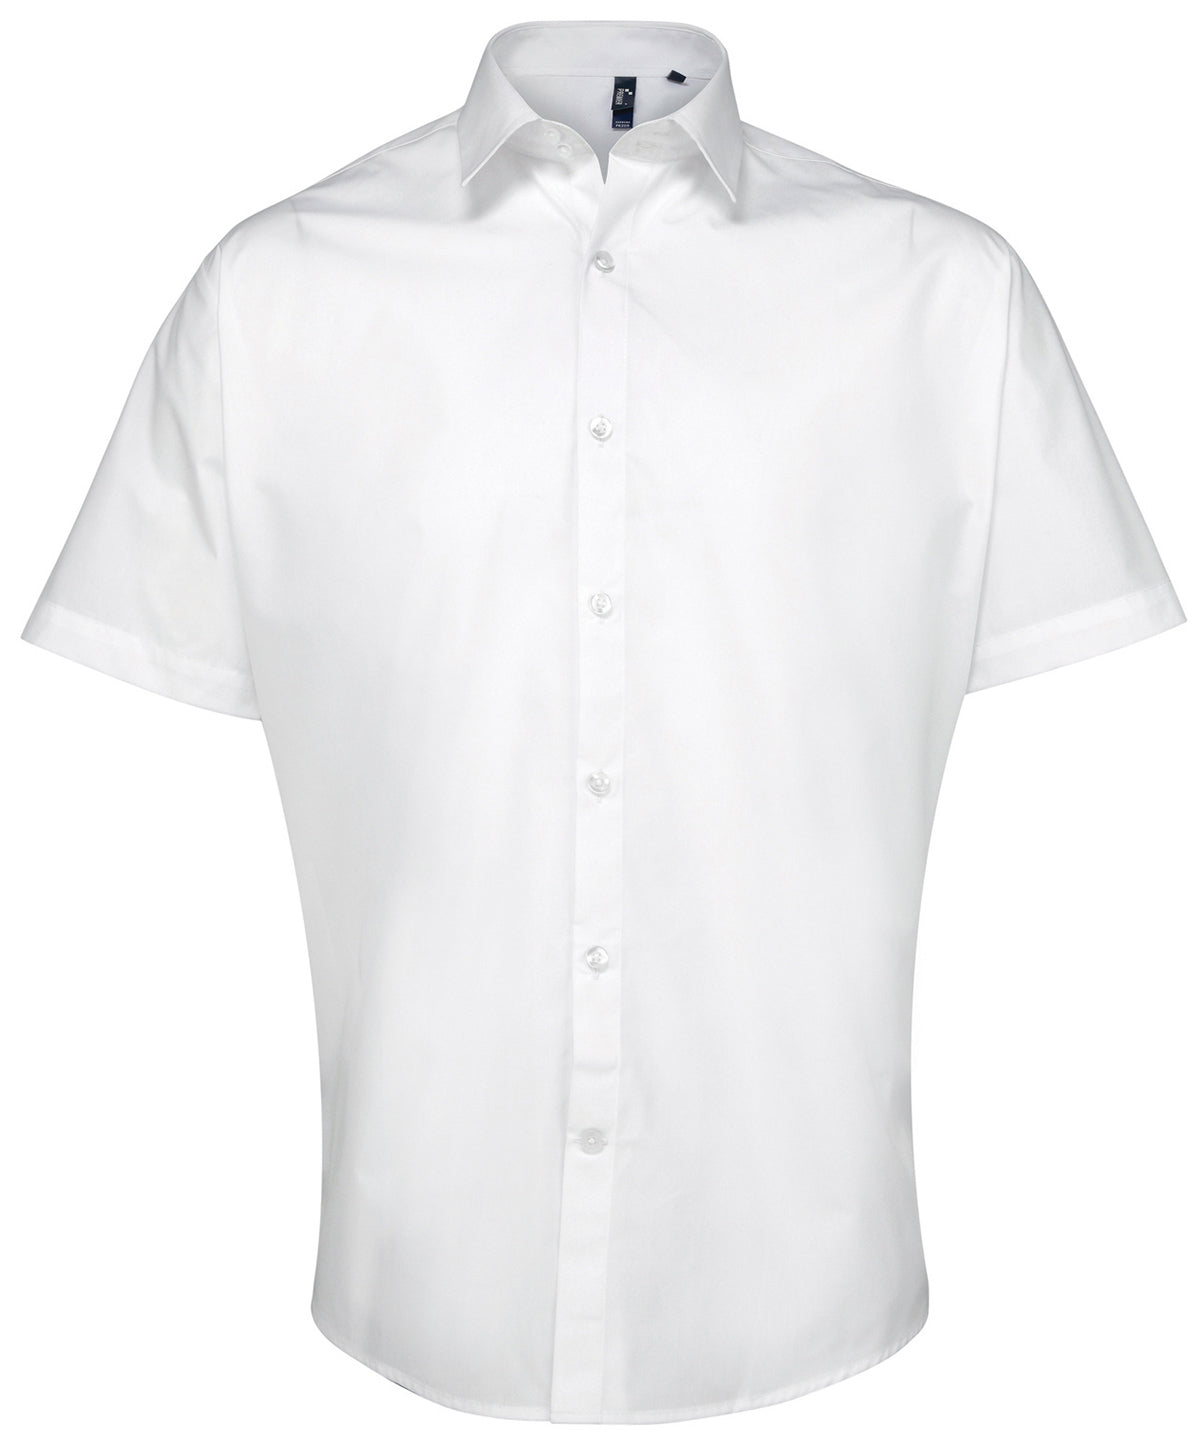 Bolir - Supreme Poplin Short Sleeve Shirt